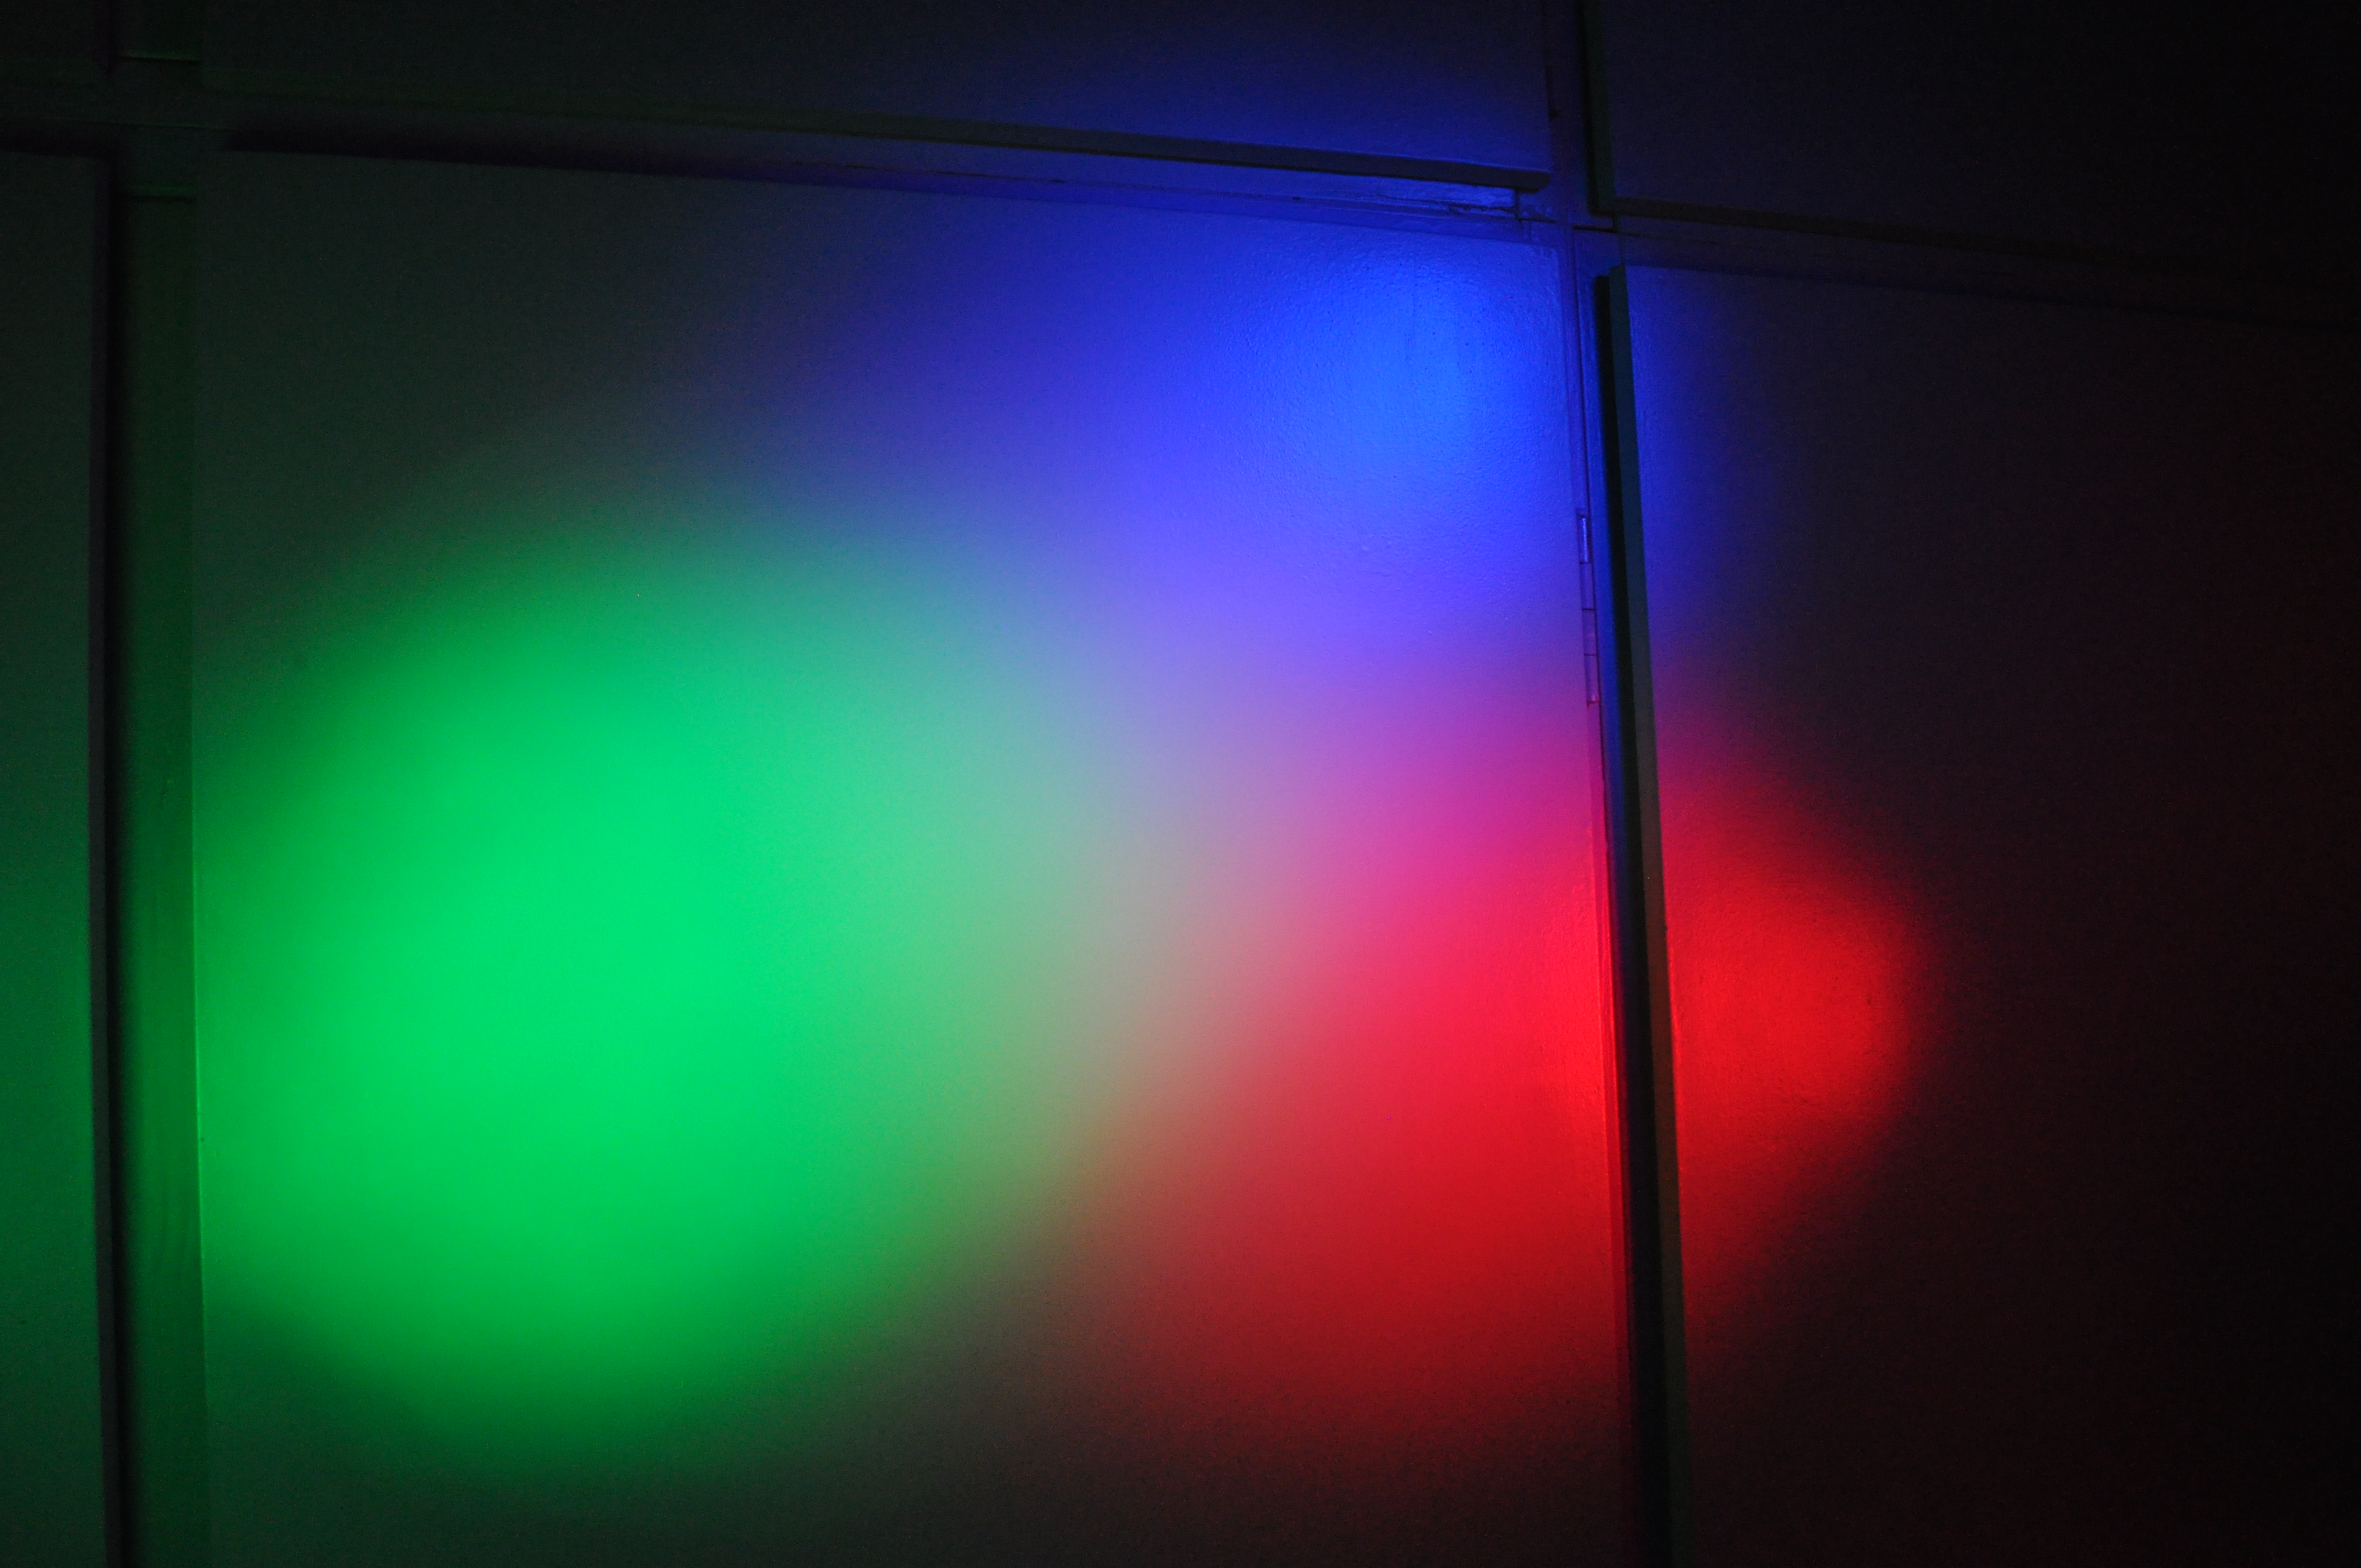 Wanneer de 3 licht-vlekken overlappen, ontstaat er een mooie RGB-vlek